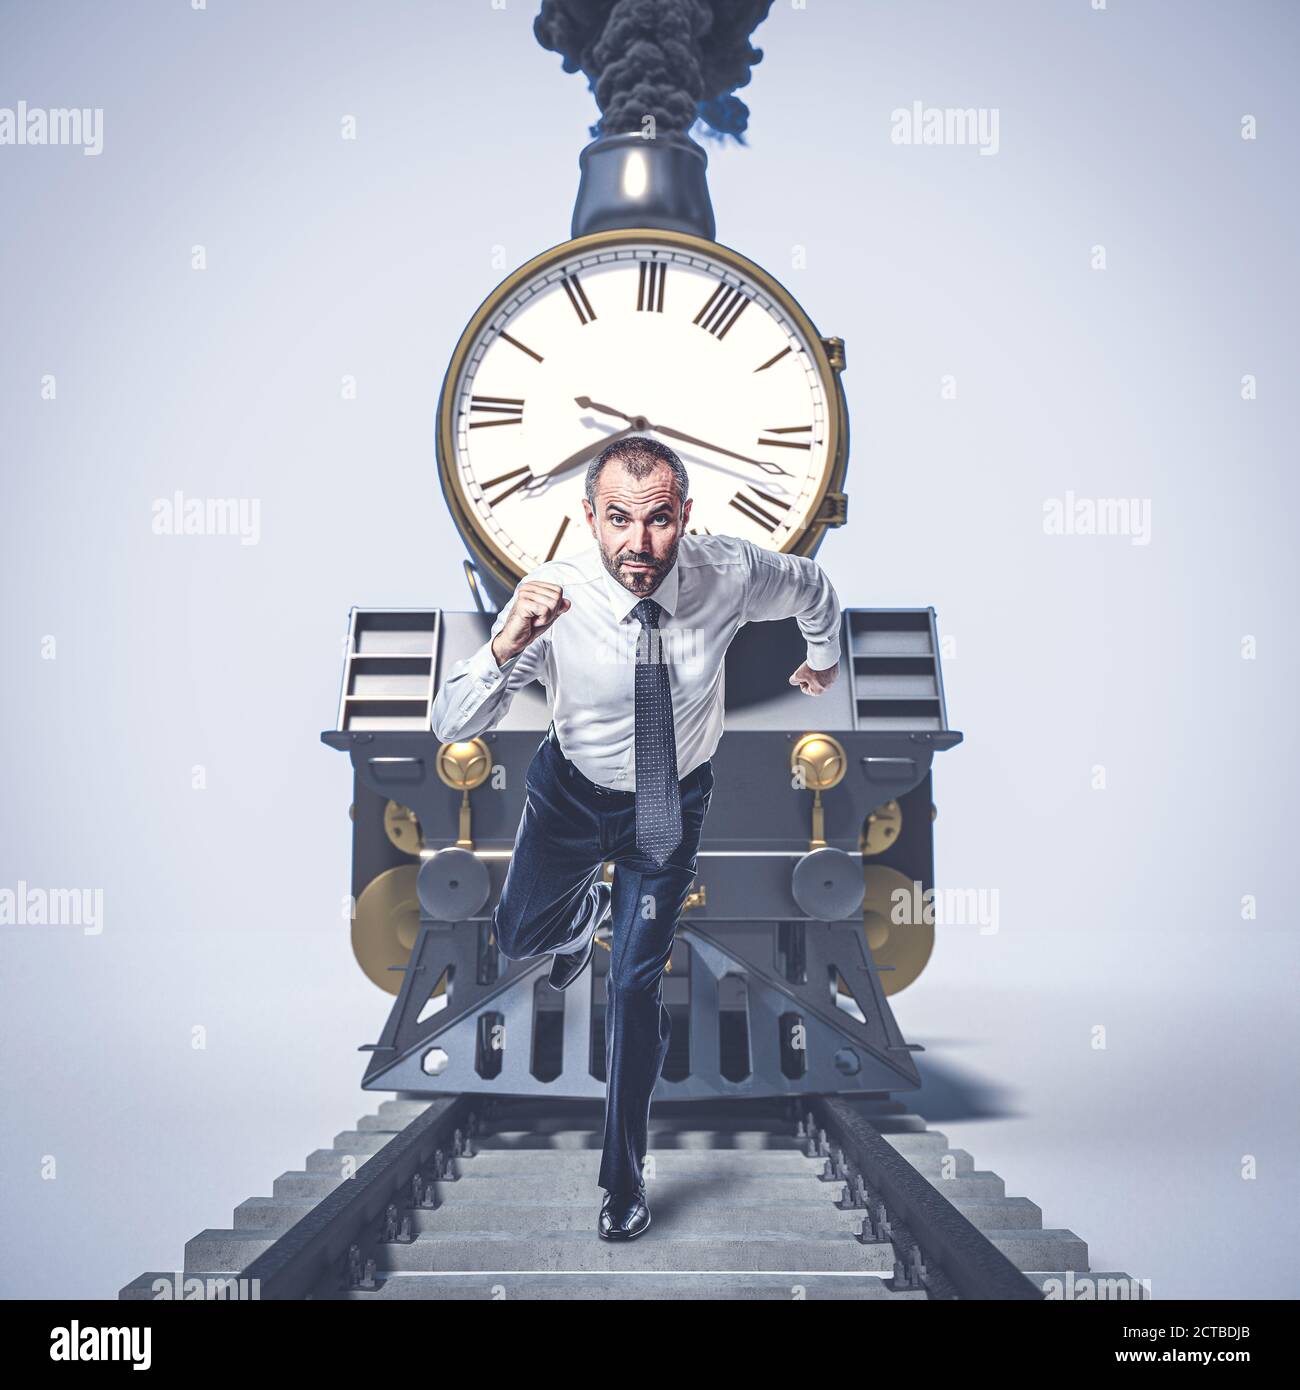 uomo che corre sulle piste e si allontana da un treno con un grande orologio. concetto di tempo, urgenza. Foto Stock